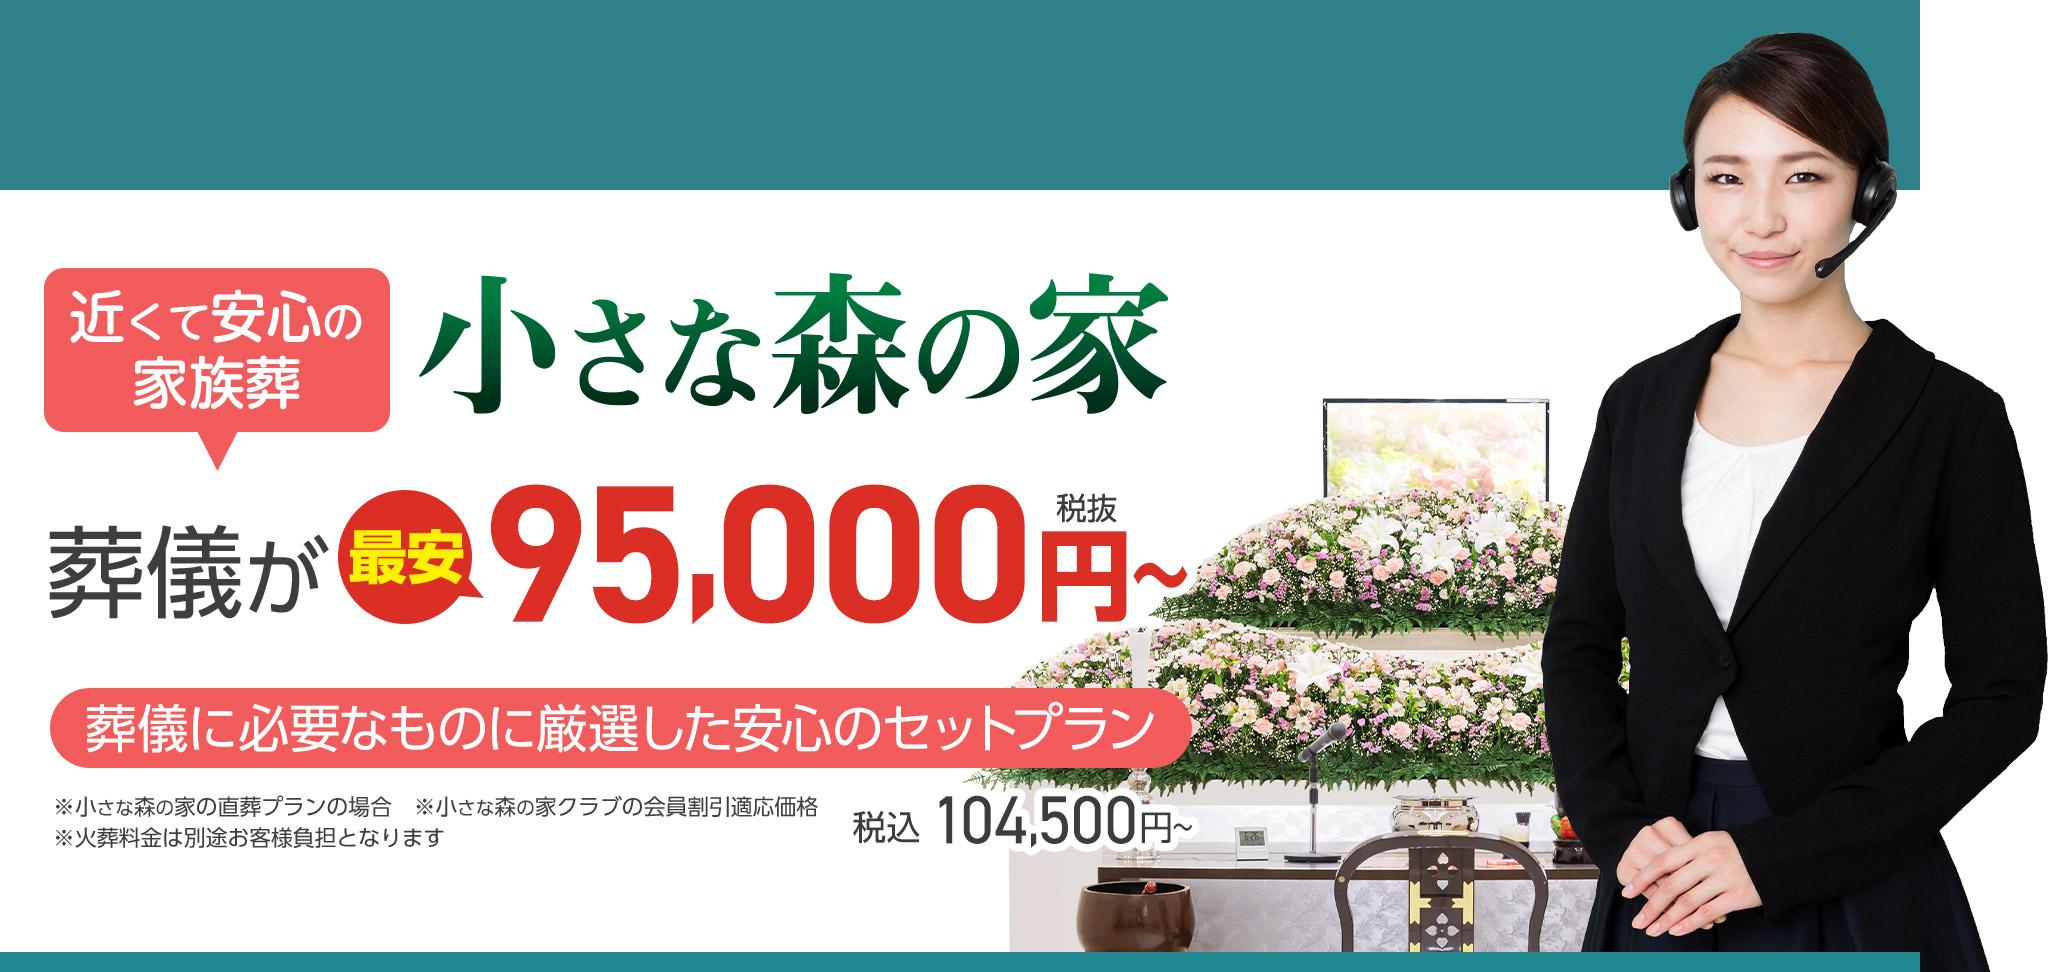 鎌ケ谷市で家族葬をお探しなら小さな森の家 近くて安心の葬儀・家族葬がWEB限定税抜95,000円